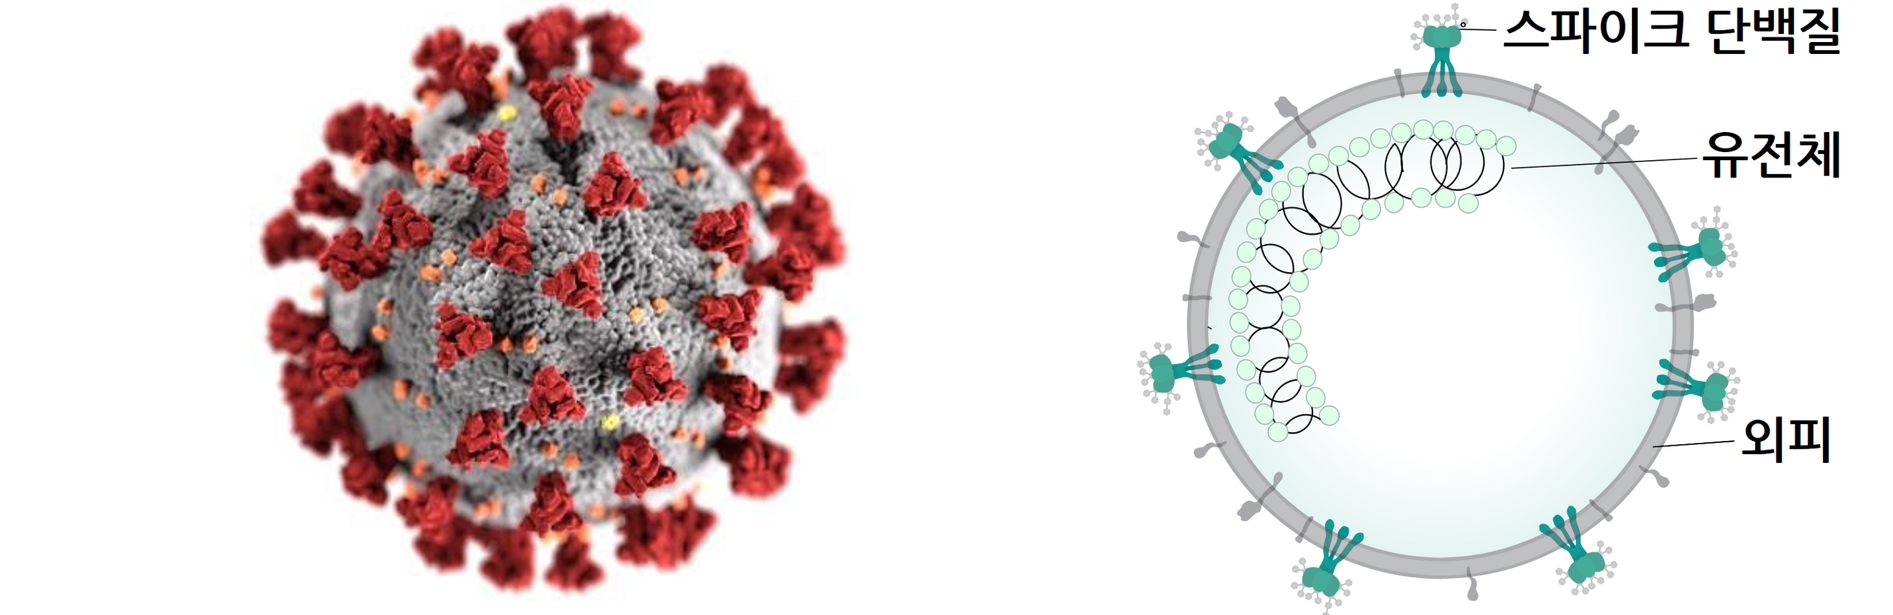 (좌) 코로나바이러스의 모습입니다. 표면에 붉은색으로 표시된 것들이 스파이크 단백질입니다. 출처: CDC/ Alissa Eckert, MSMI; Dan Higgins, MAMS2 (우) 코로나바이러스의 구조입니다. 바이러스의 유전정보를 담고 있는 RNA 유전체가 외피 속에 숨겨져 있고, 외피 표면에는 스파이크 단백질이 붙어 있습니다. 출처: Wikimedia Commons, Coronavirus virion structure.svg, CC BY-SA 4.0